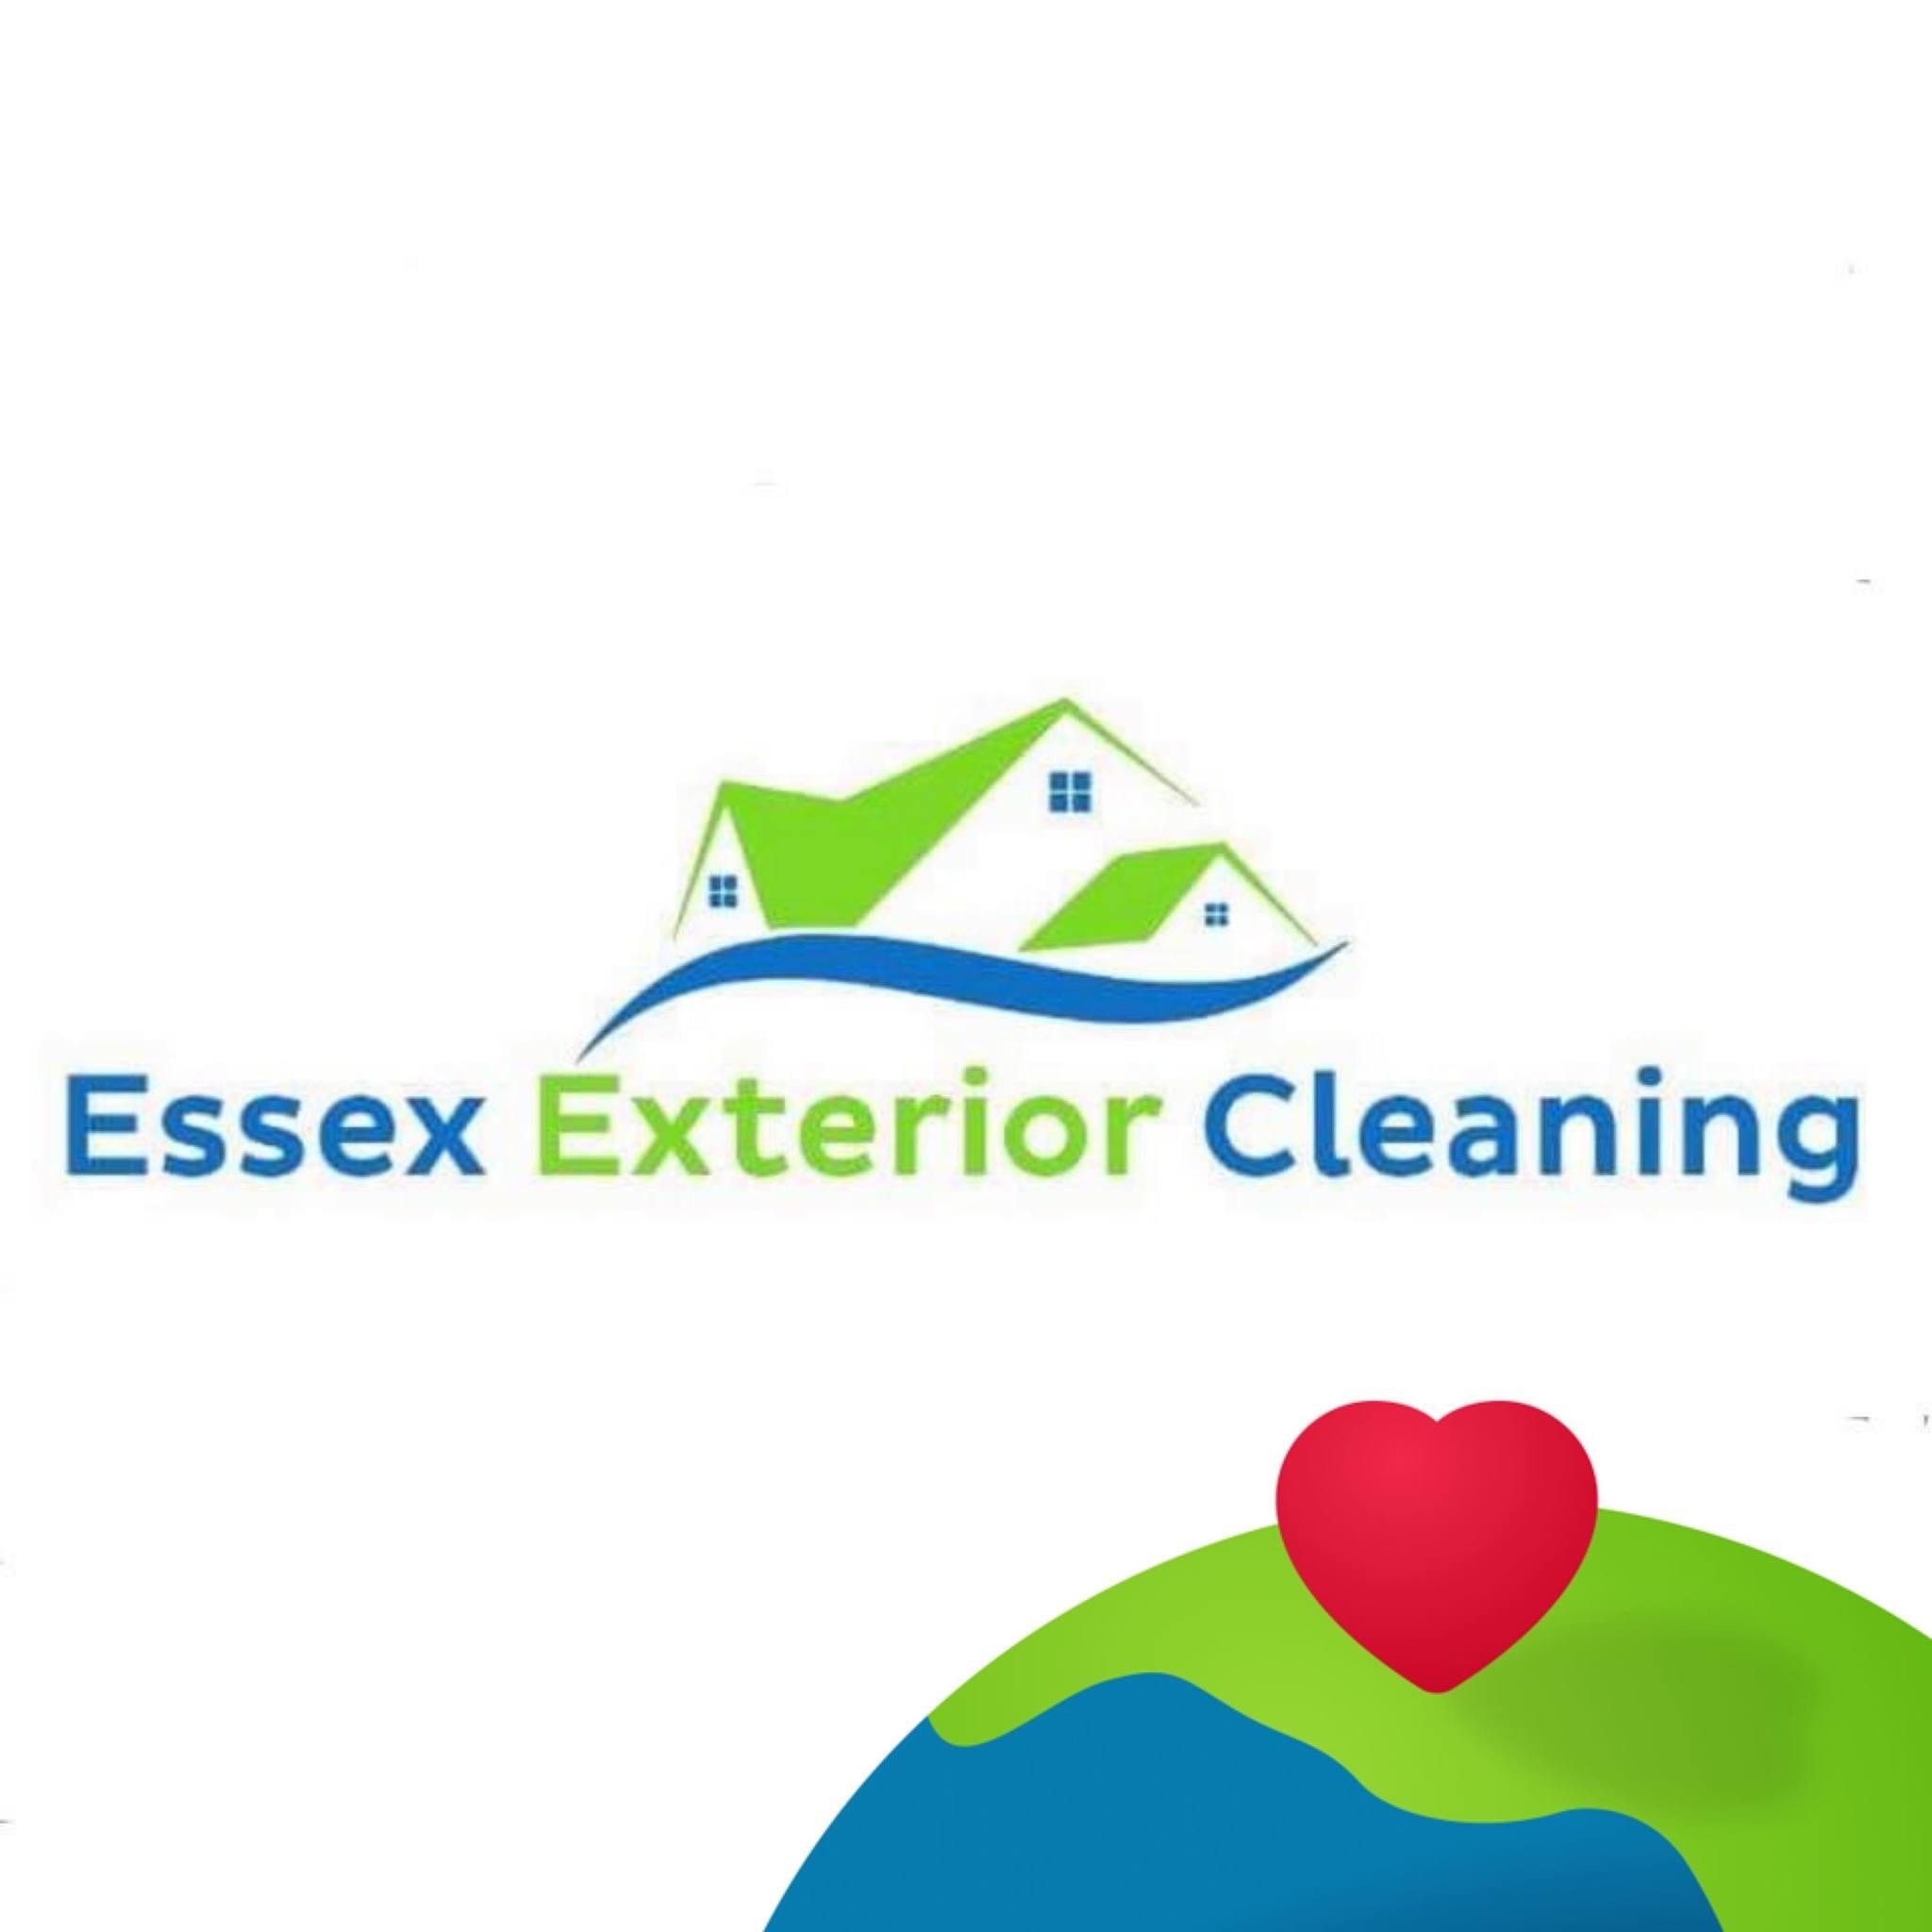 Essex Exterior Cleaning